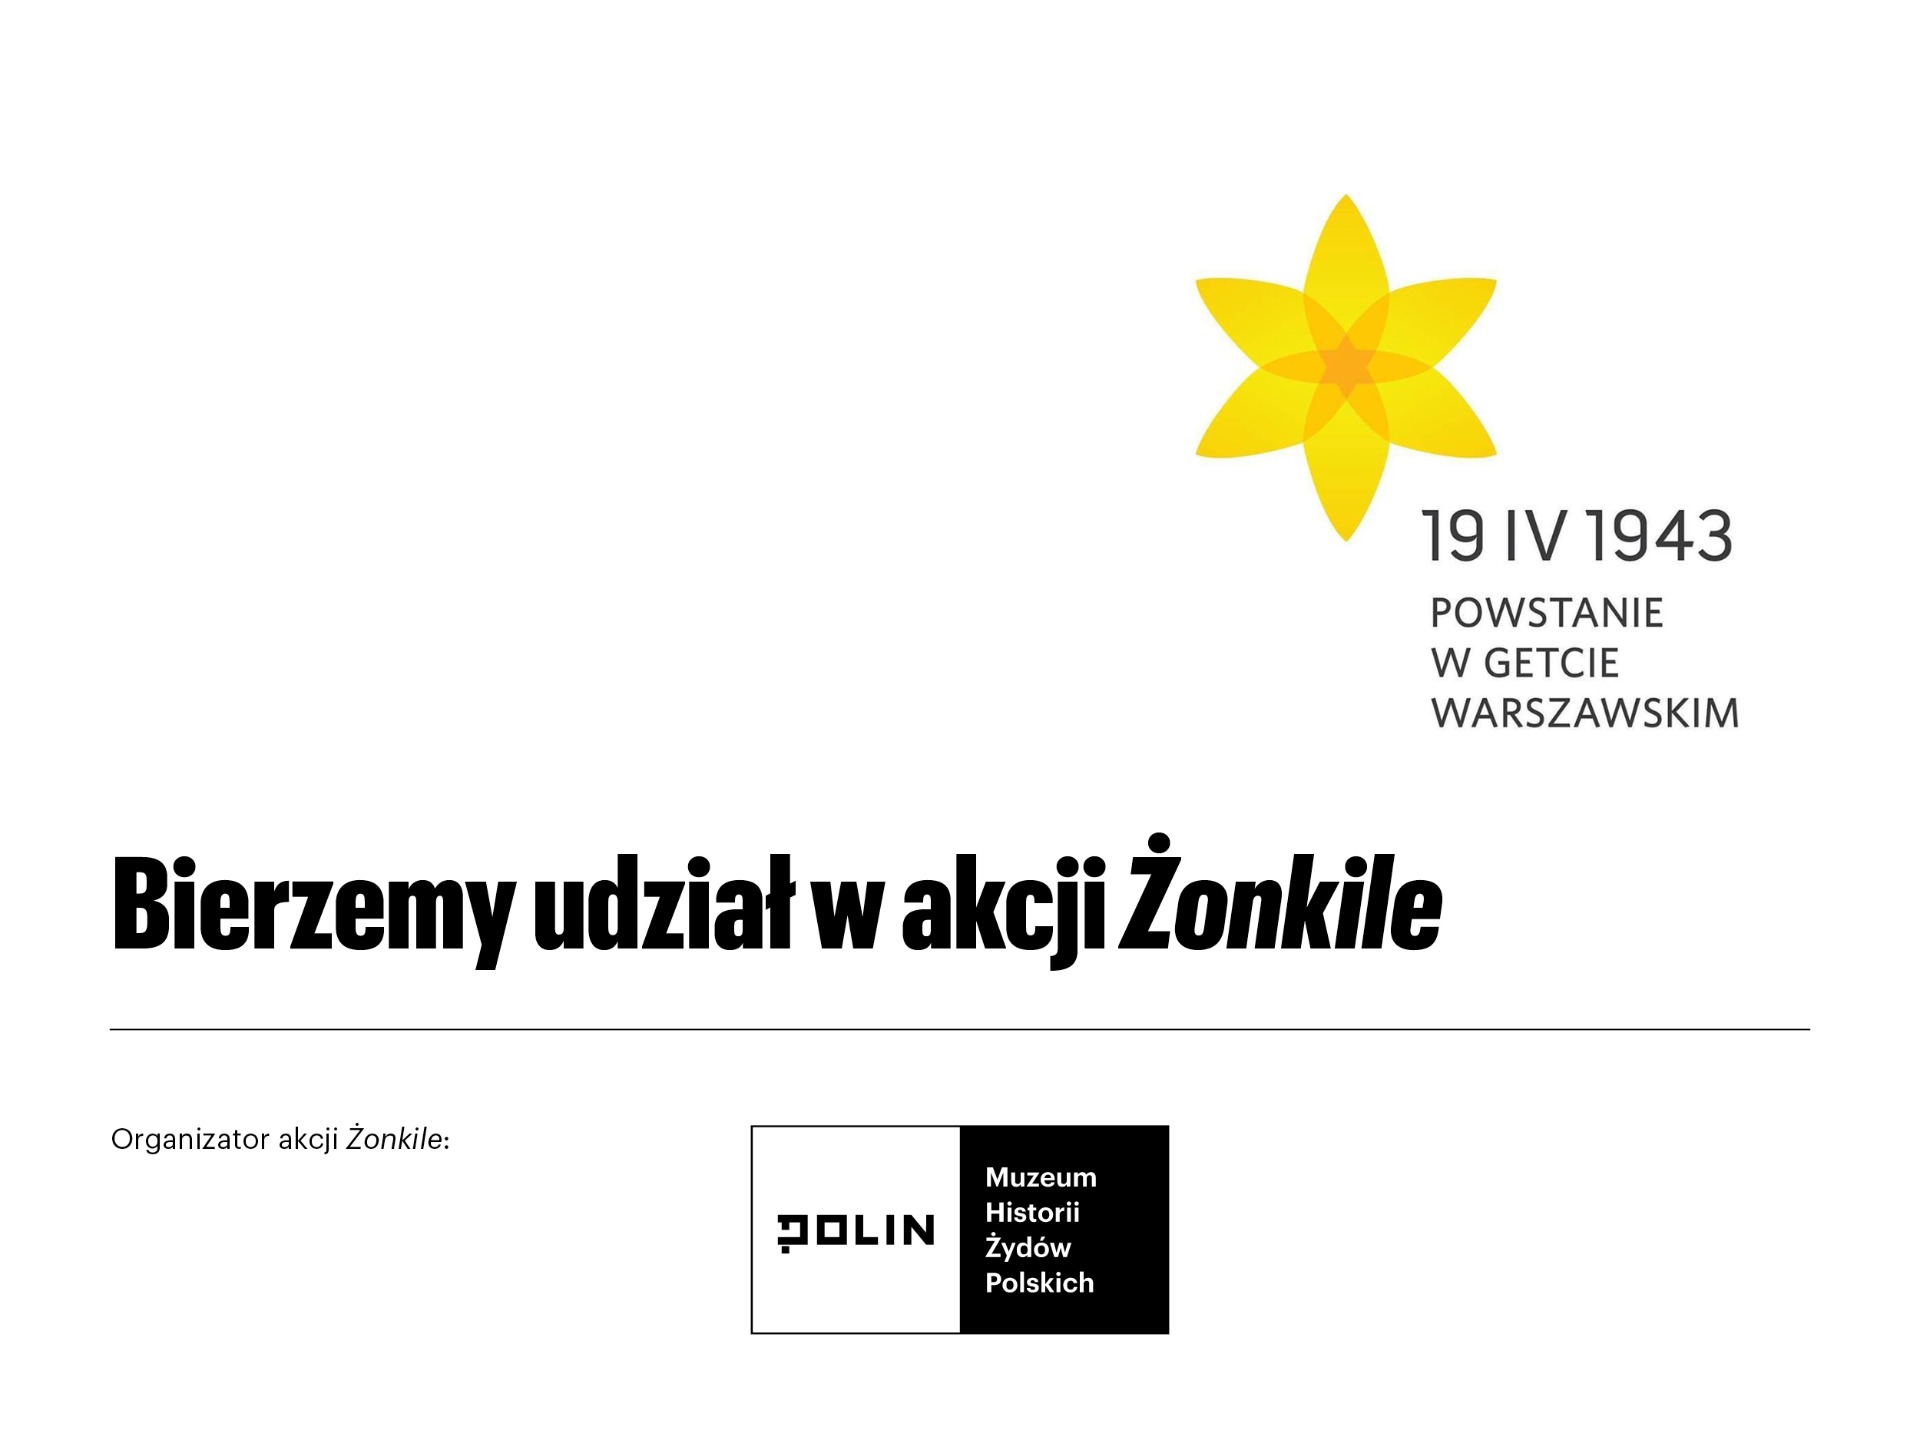 19 IV 1943 POWSTANIE W GETCIE WARSZAWSKIM
Bierzemy udział w akcji Żonkile
Organizator akcji Żonkile: Polin Muzeum Historii Żydów Polskich